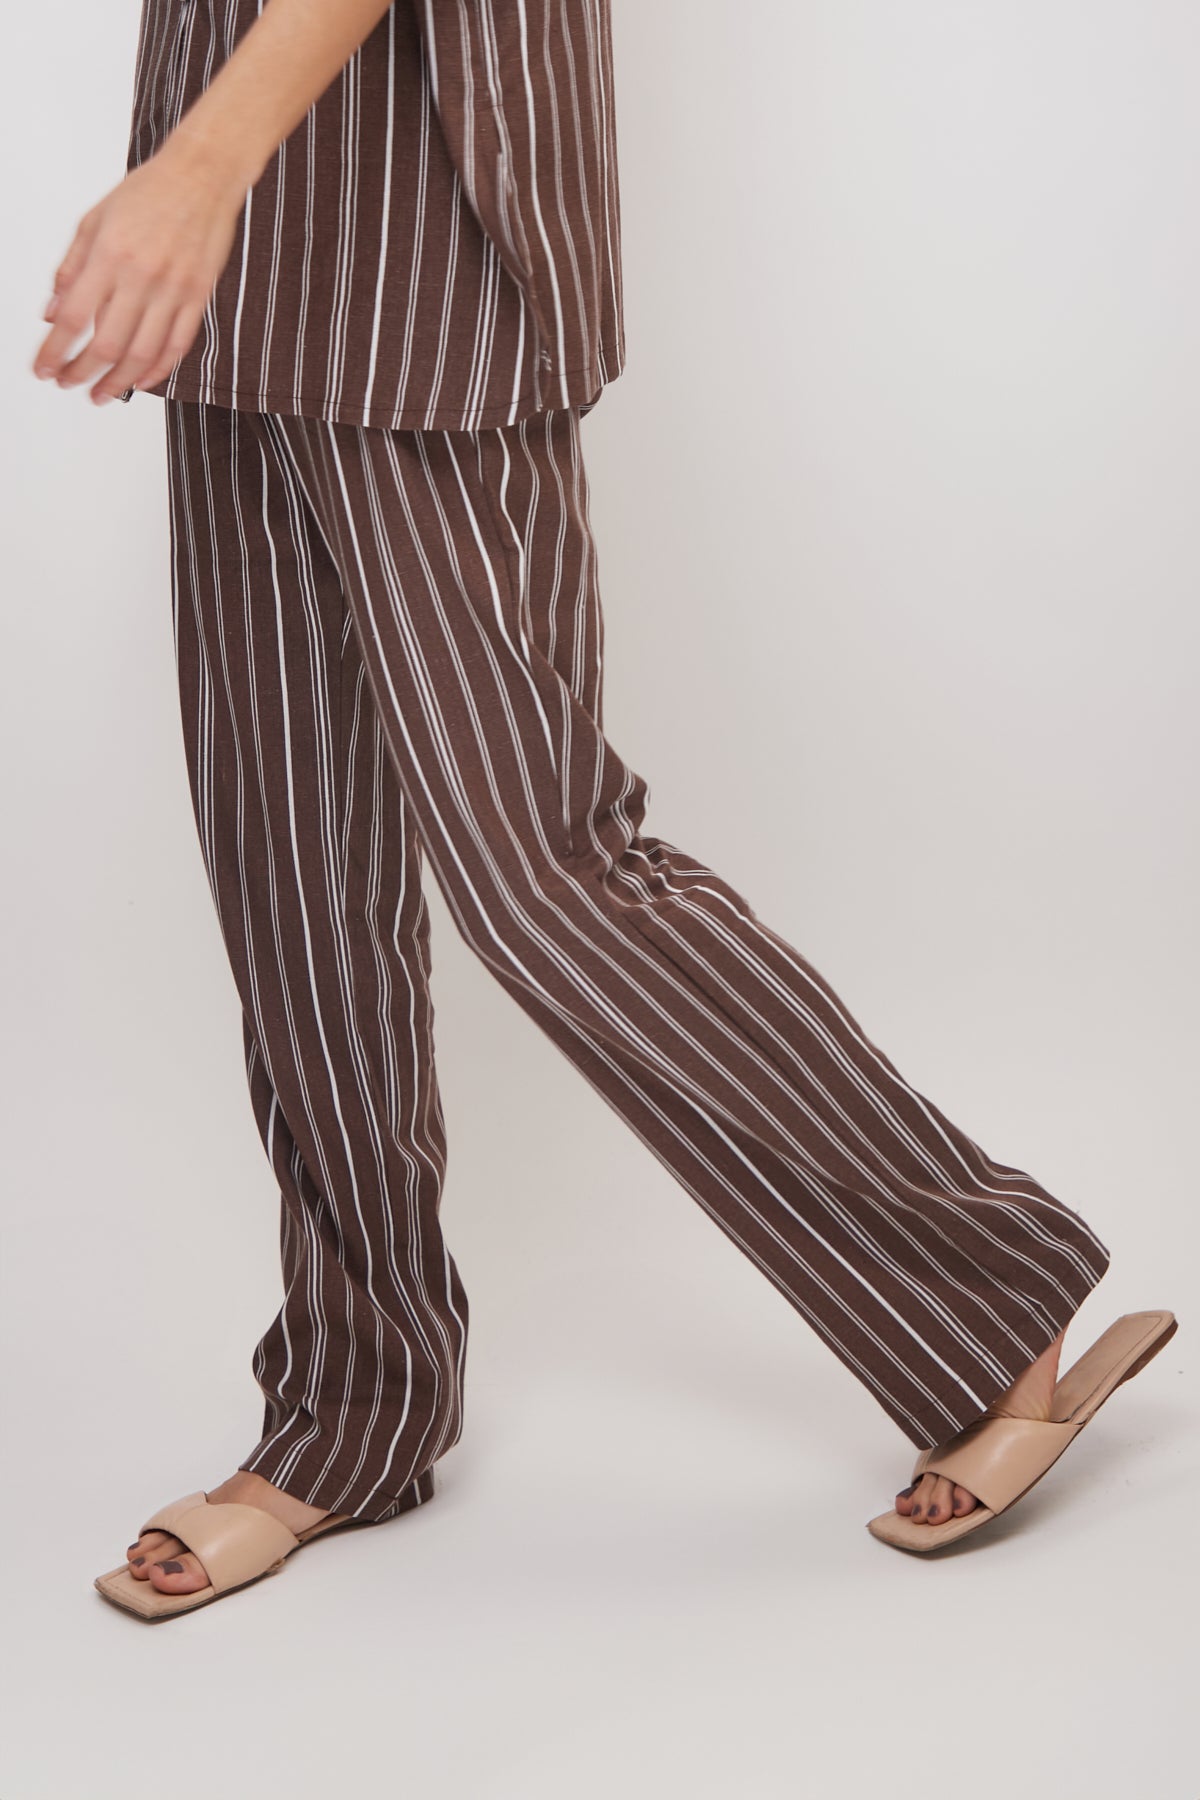 Tessa Brown Striped Cotton Pants